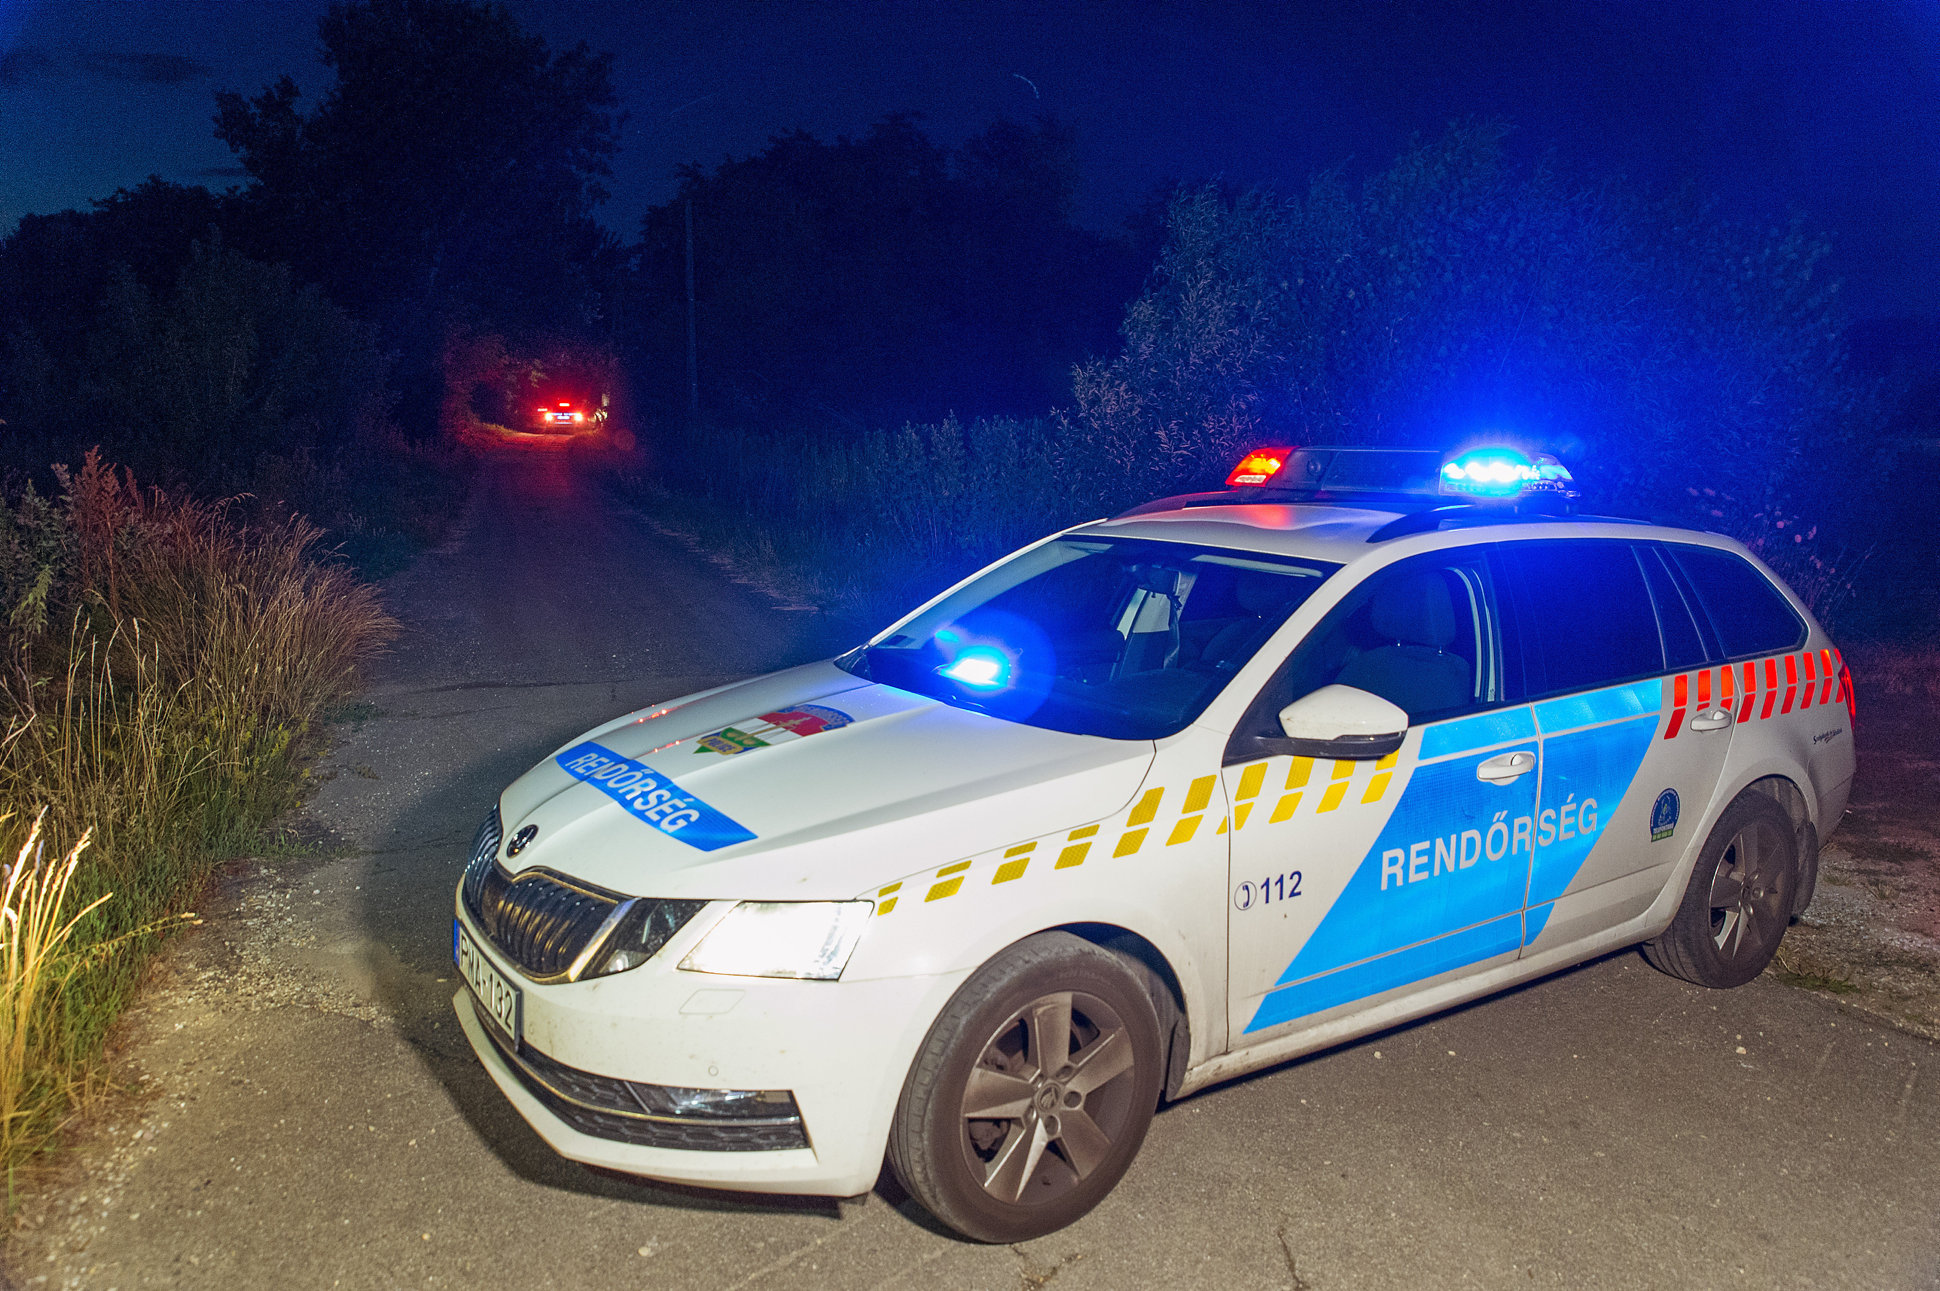 Átadtak a magyar rendőrségnek egy késeléssel gyanúsított román állampolgárt